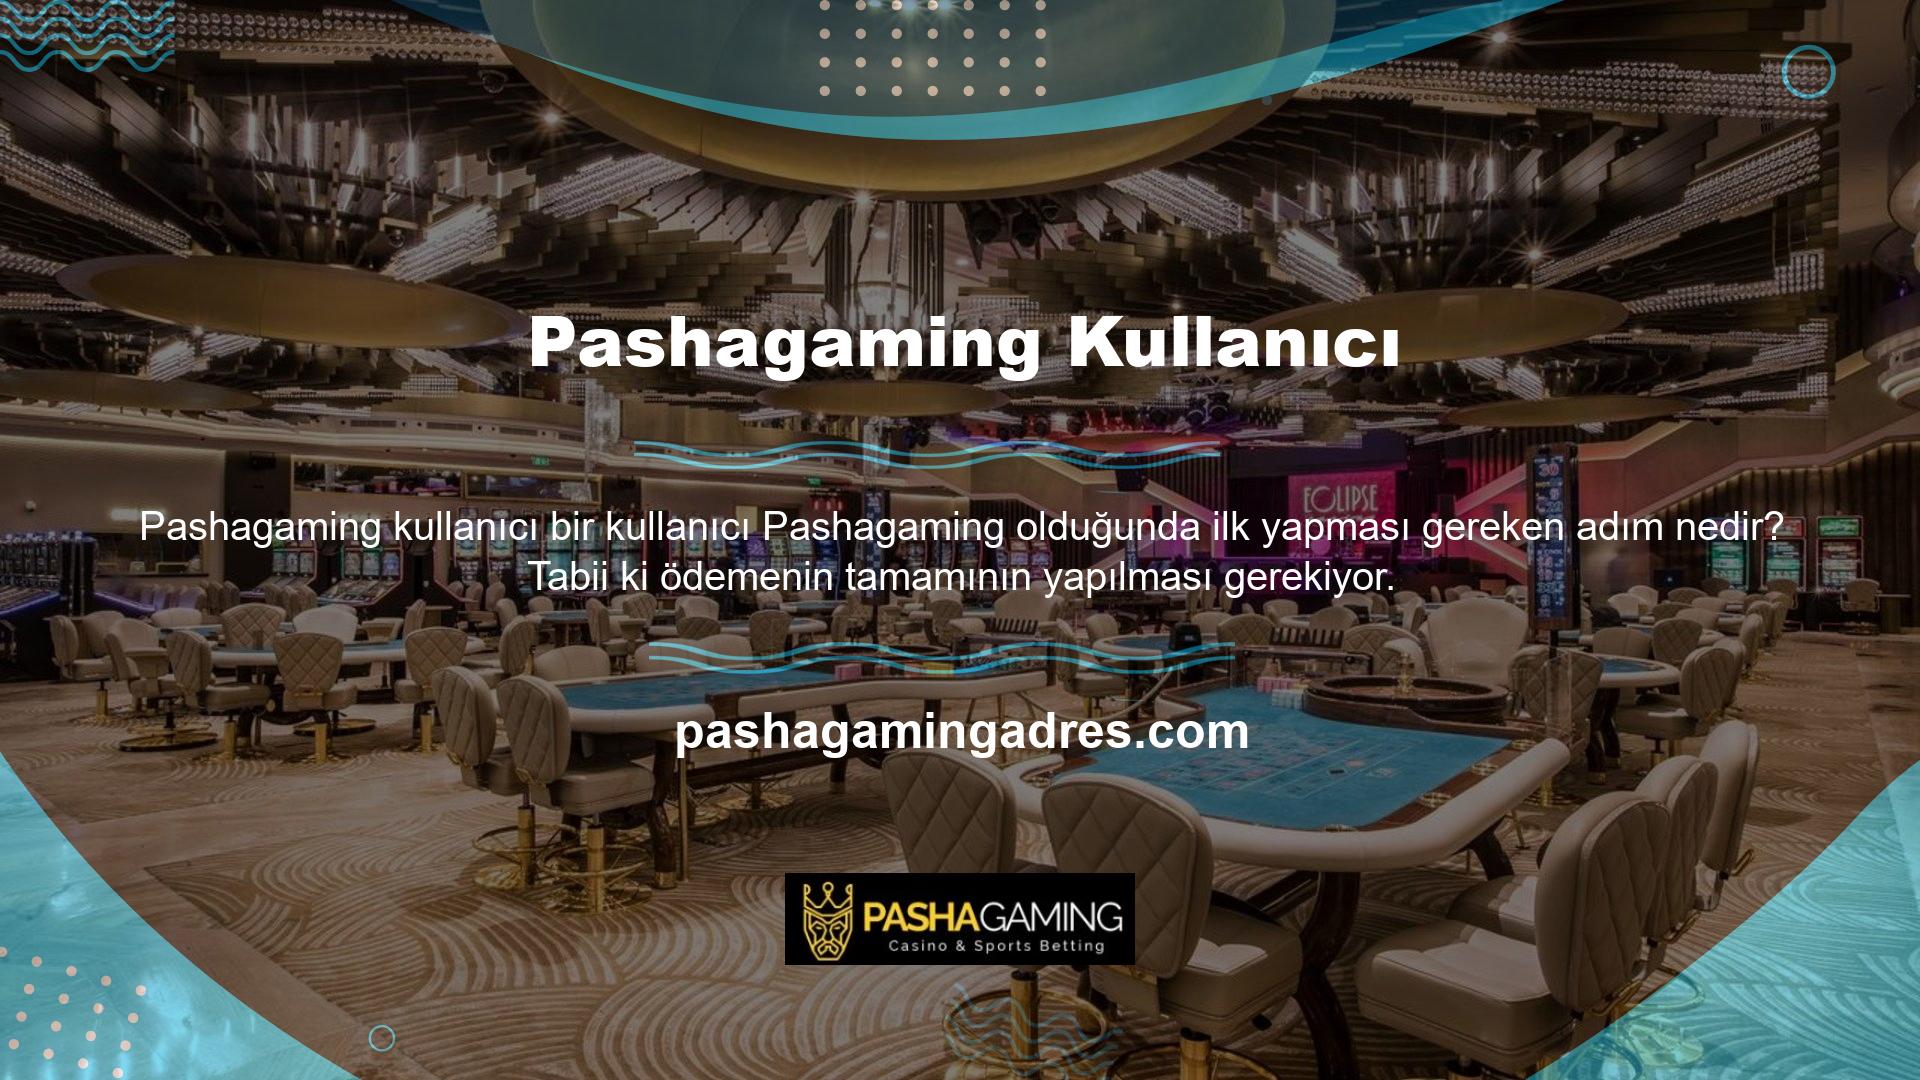 Pashagaming ödeme detaylarının en kapsamlı olduğu bahis sitesidir